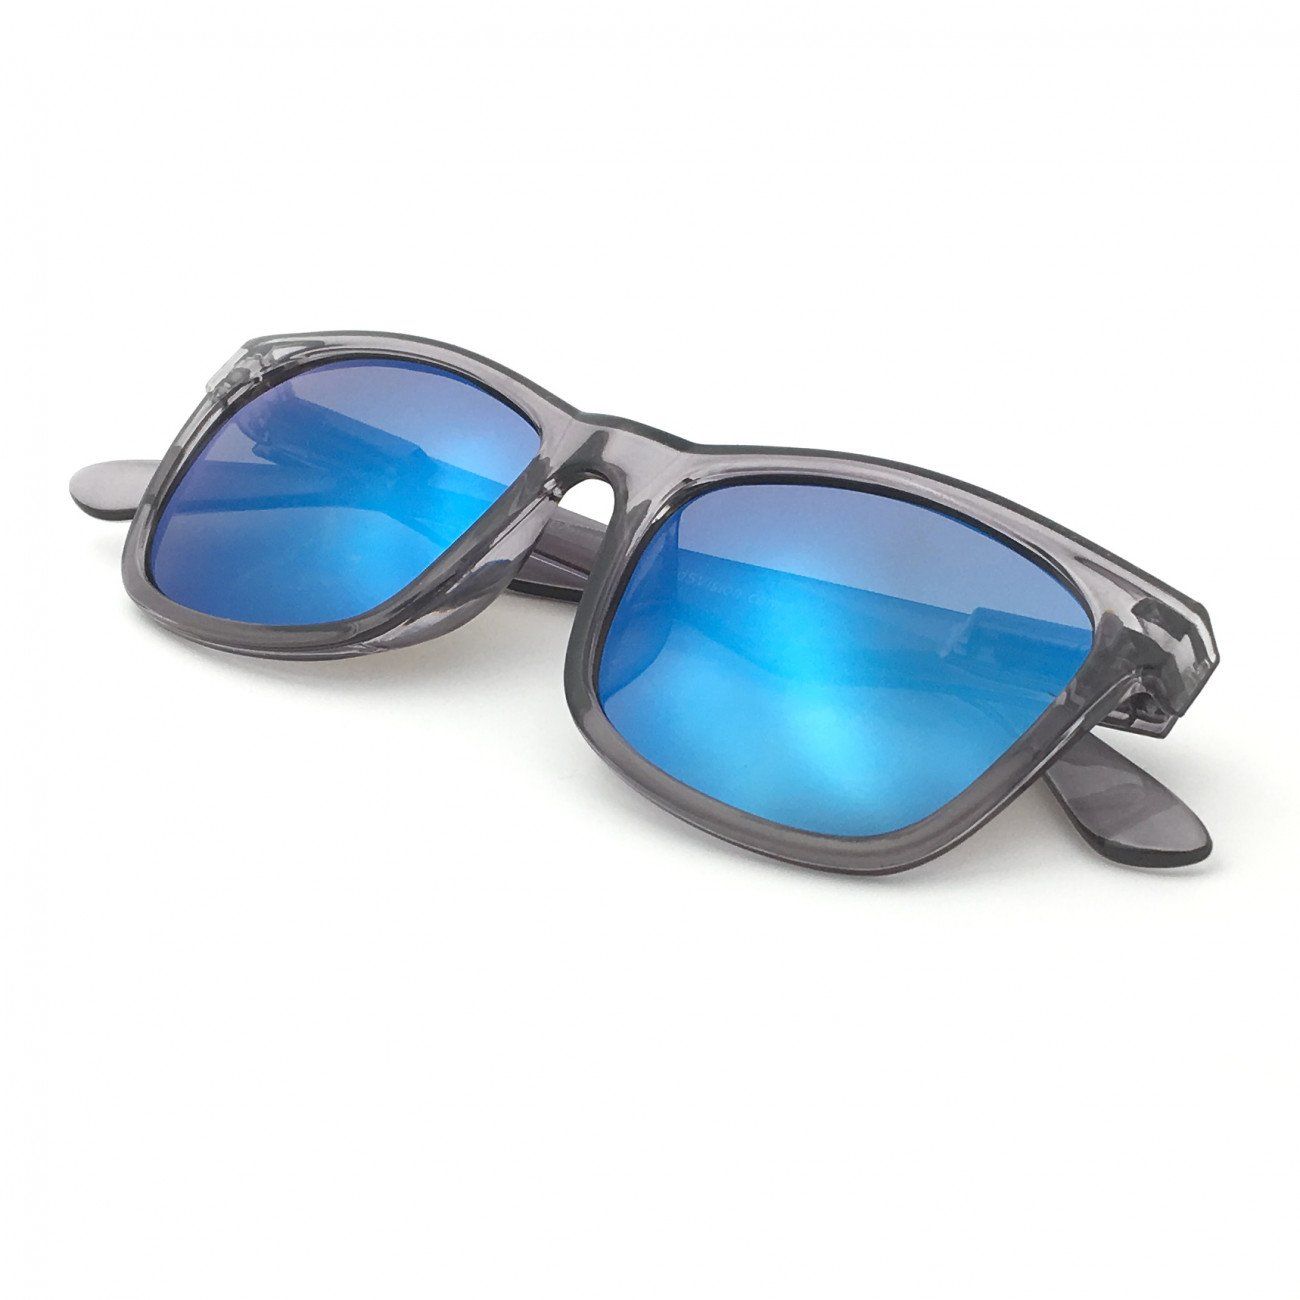 Sunglasses, Polarized Lenses, Unisex Style